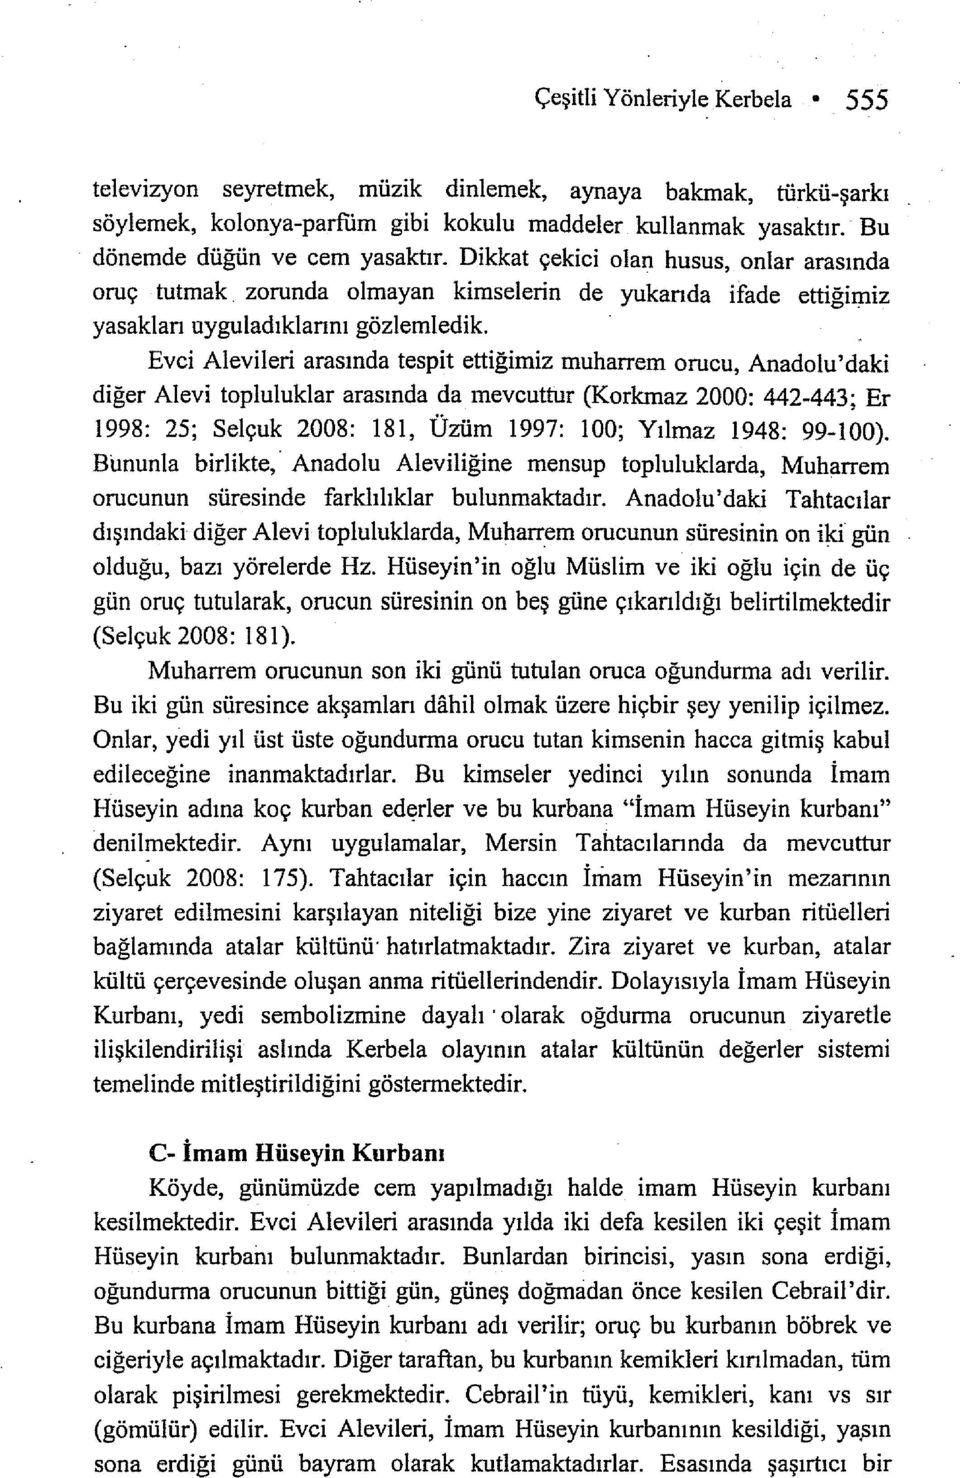 Evci Alevileri arasında tespit ettiğimiz muharrem orucu, Anadolu'daki diğer Alevi topluluklar arasında da mevcuttur (Korkmaz 2000: 442-443; Er 1998: 25; Selçuk 2008: 181, Üzüm 1997: 100; Yılmaz 1948: